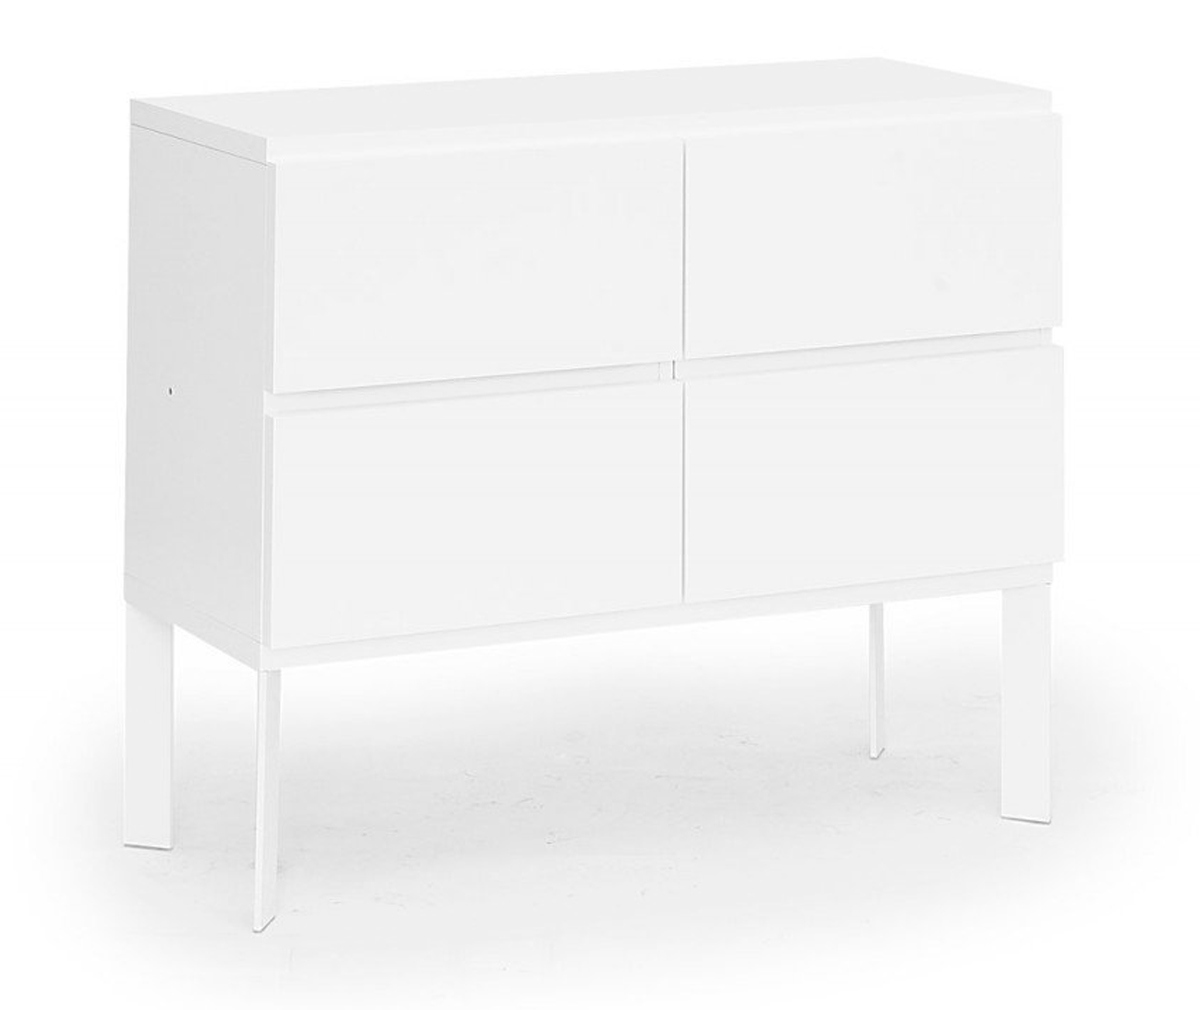 Muurame Mup Dresser White, W 104 cm